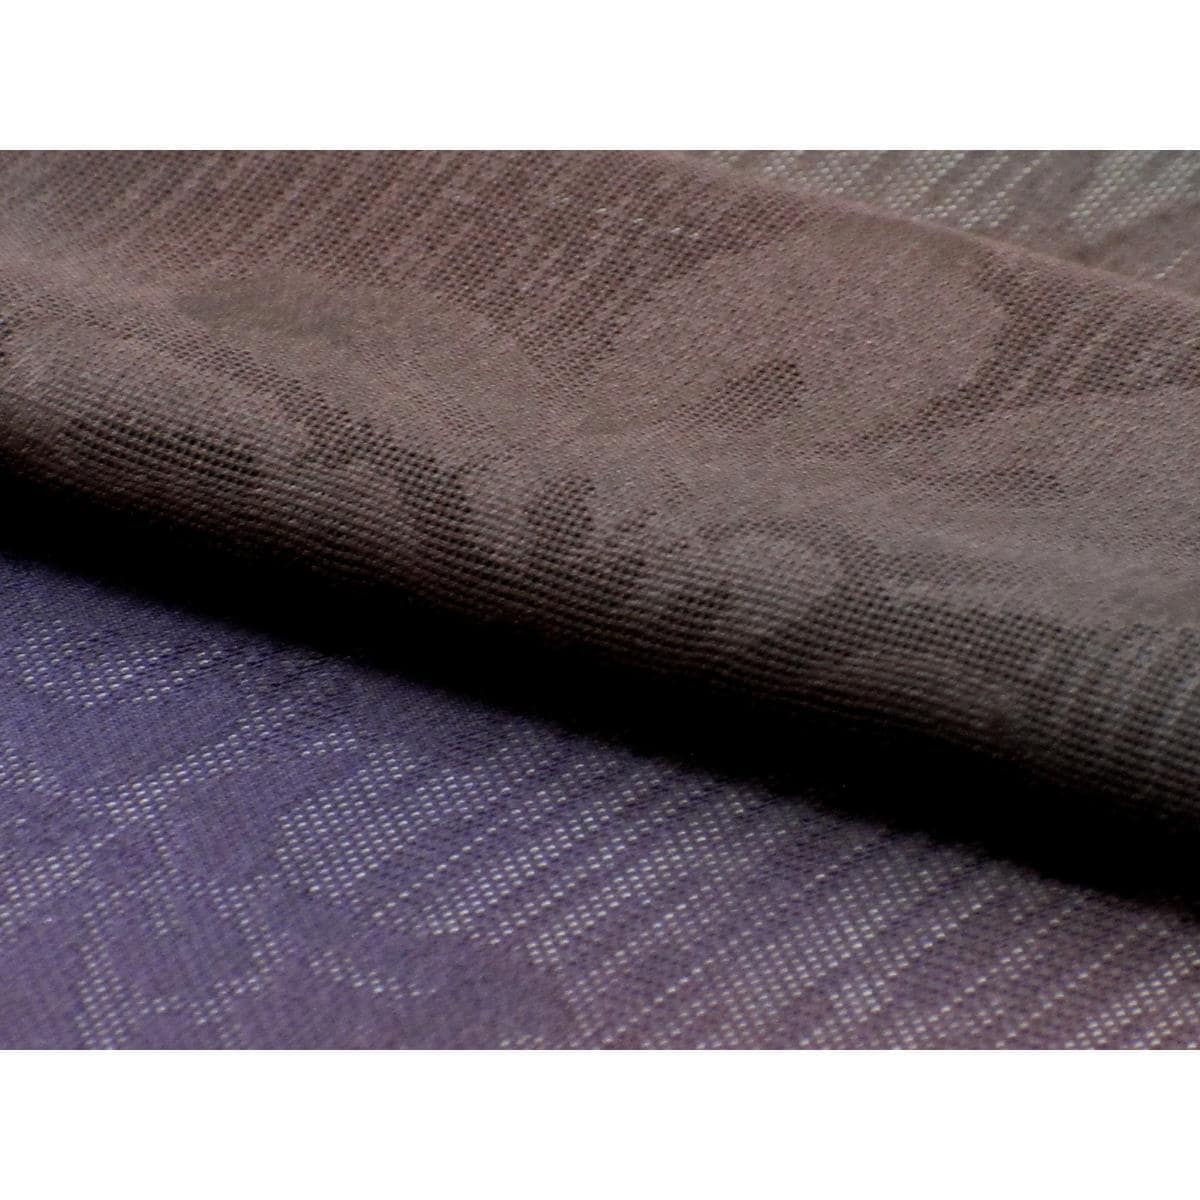 [Unused items] Kimono roll fabric Maeda Jinse summer item